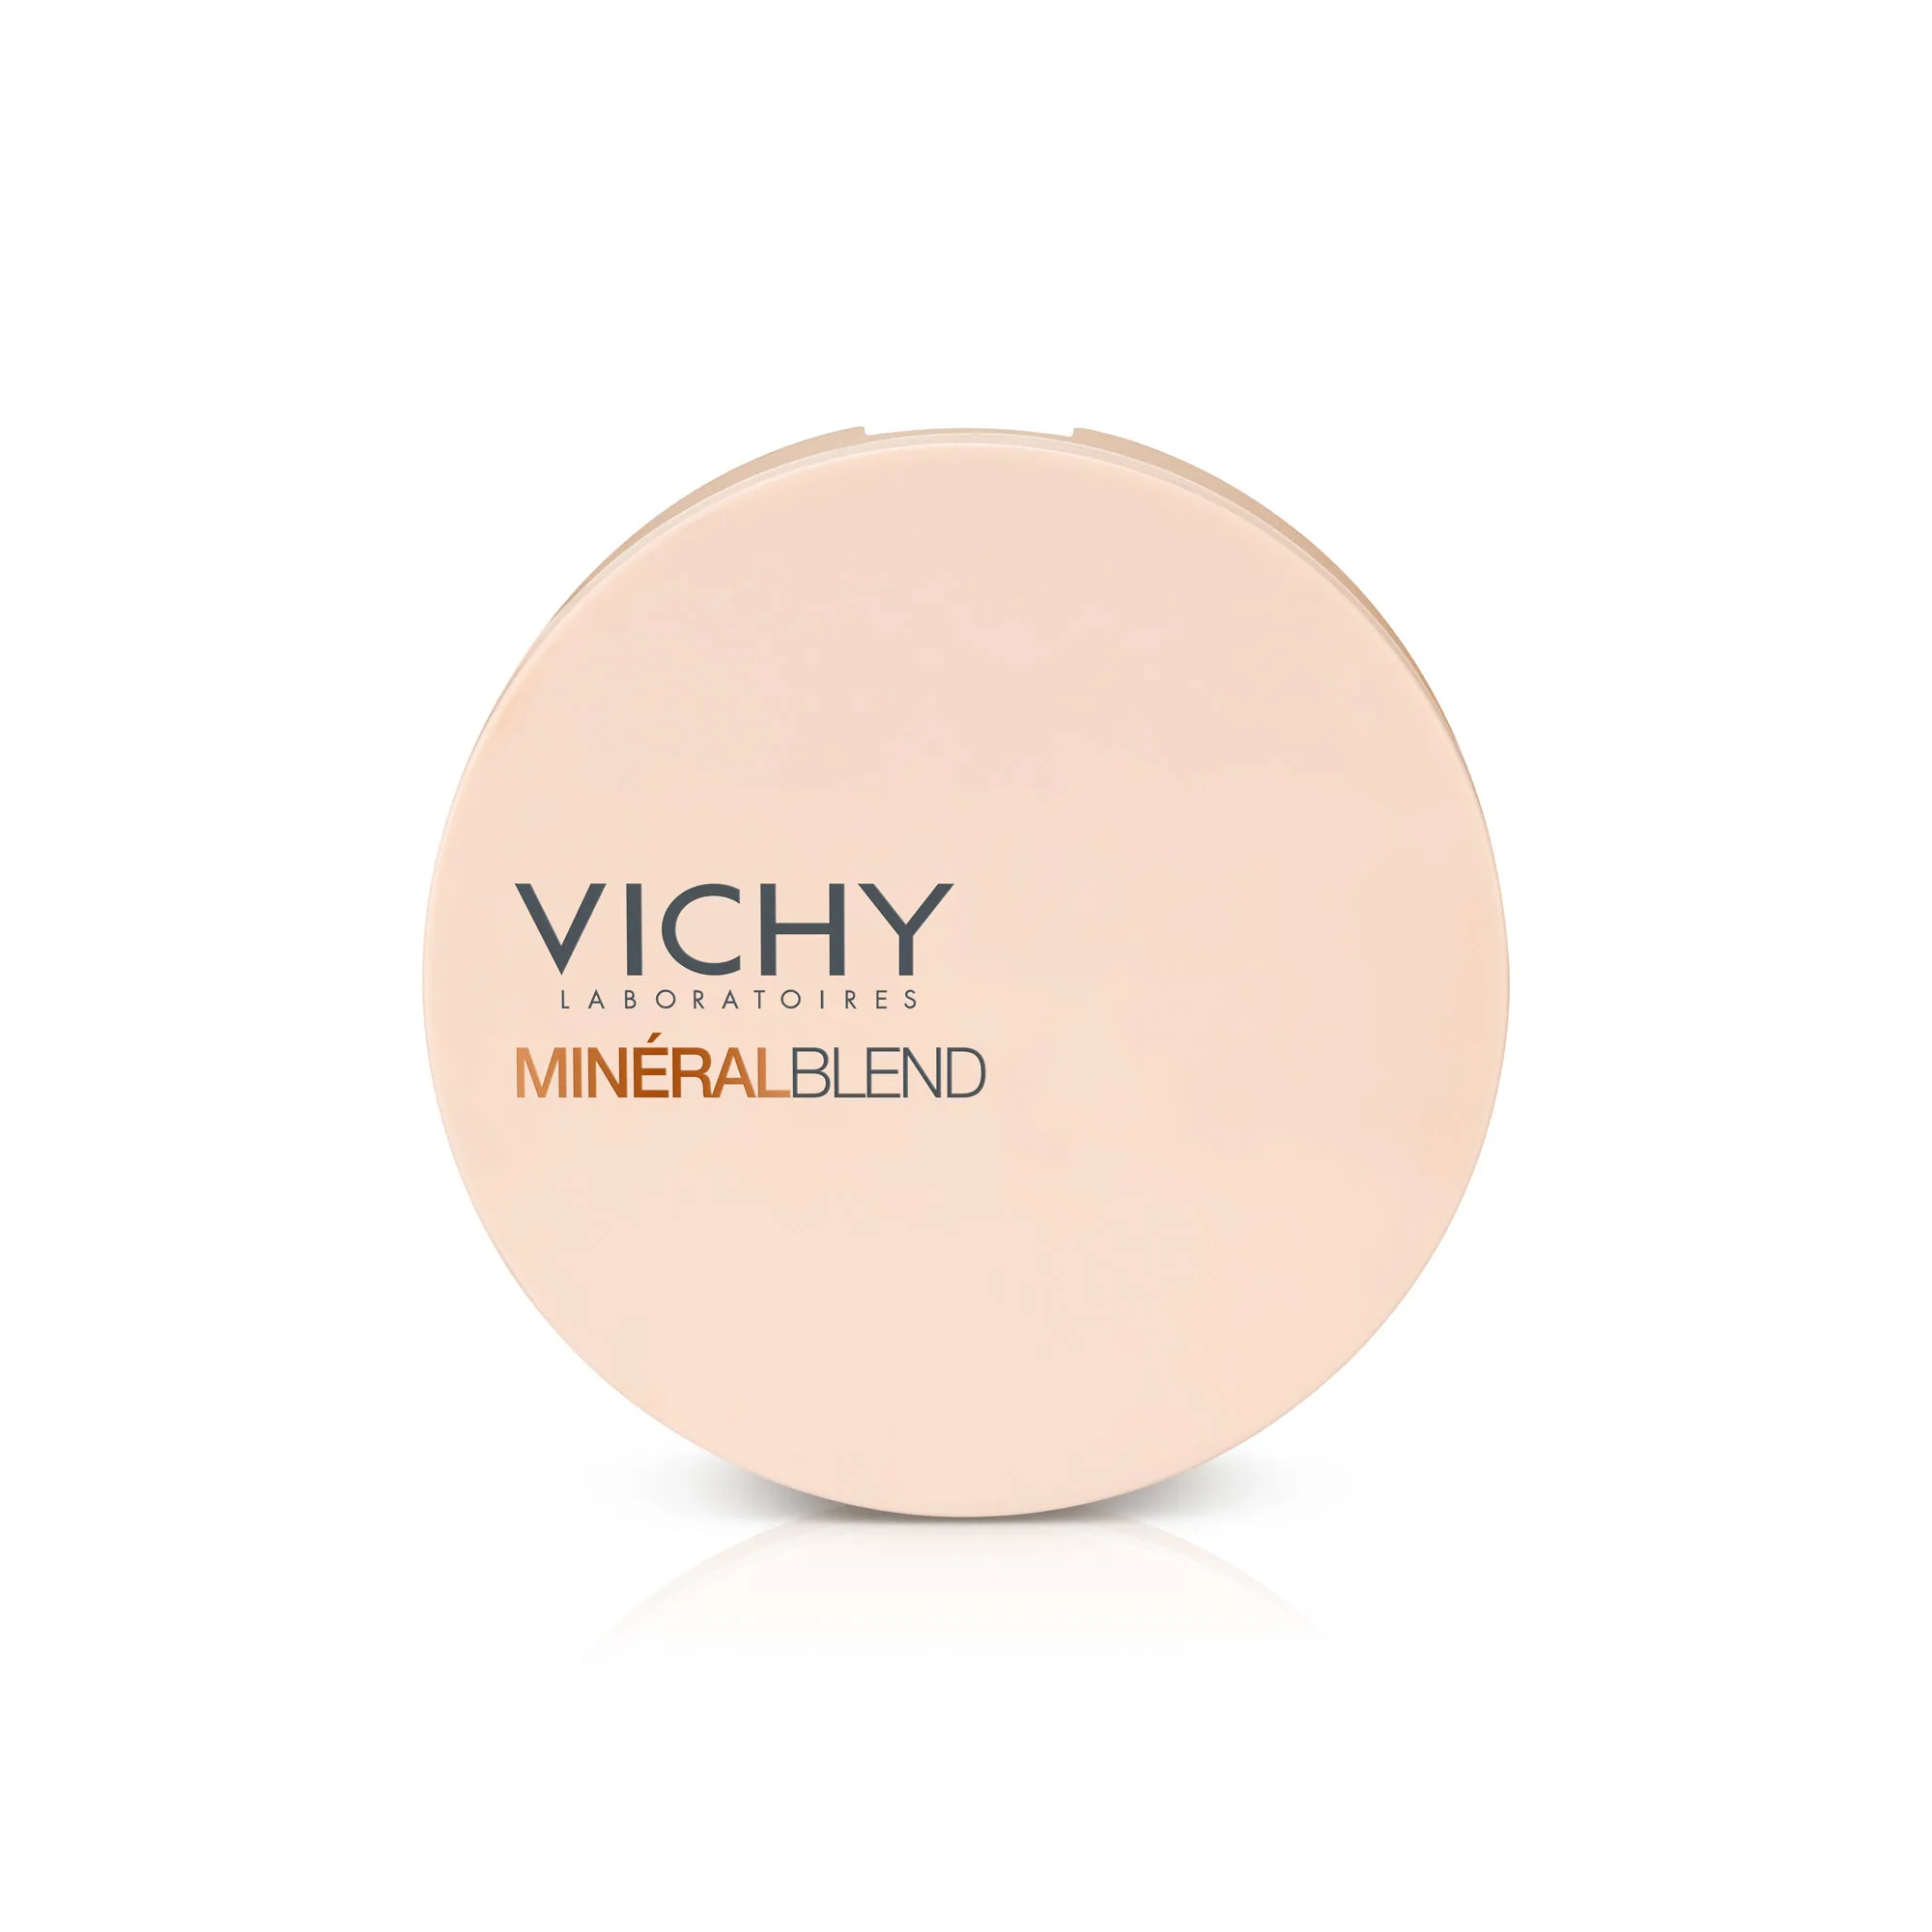 Vichy Mineralblend, puder mozaikowy w kompakcie trójkolorowy, nude tan, 9 g